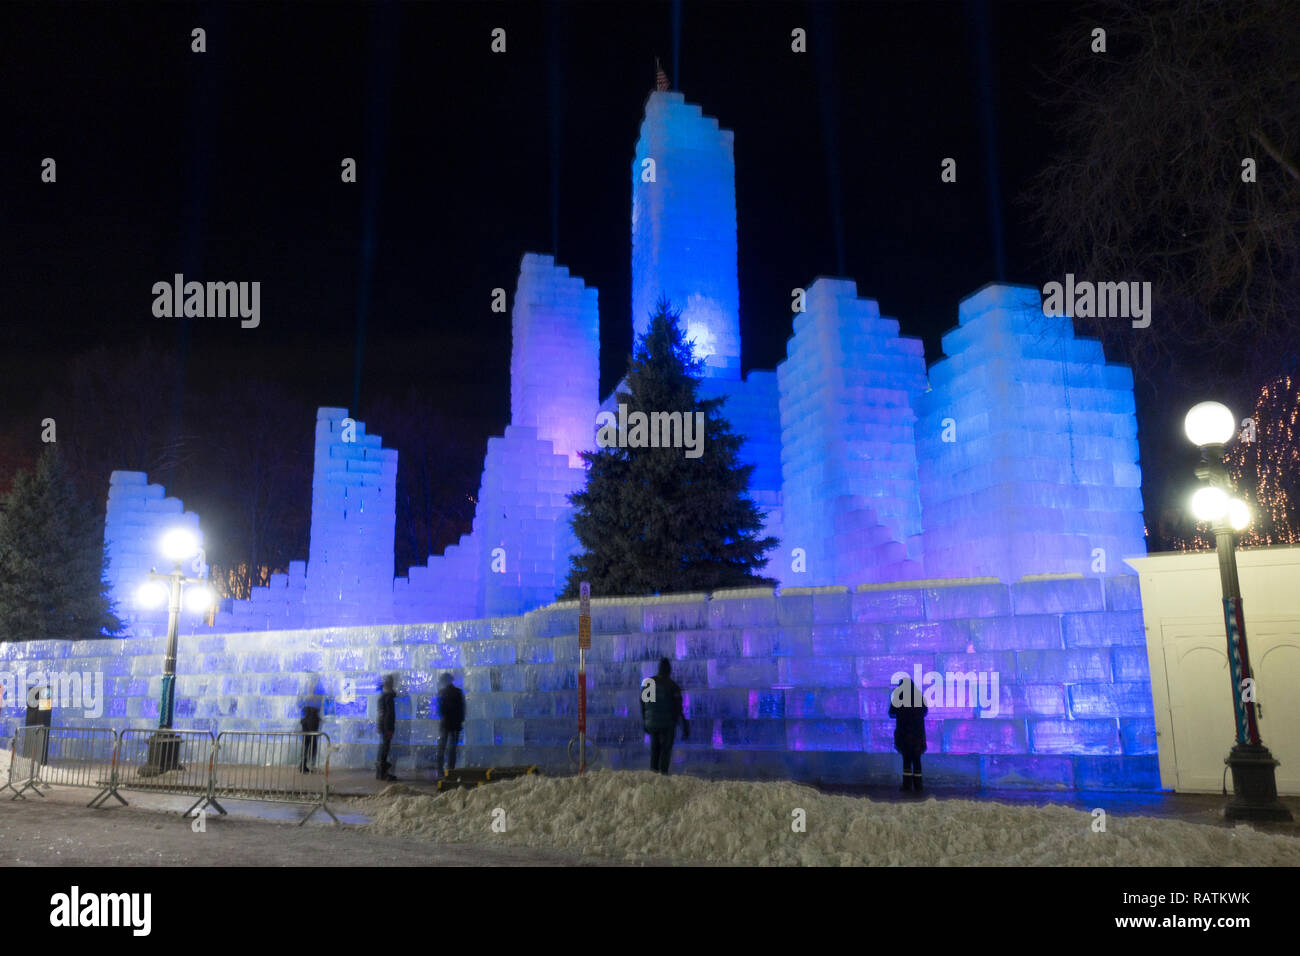 Il castello di ghiaccio nel Parco di riso per il Carnevale d'inverno. St Paul Minnesota MN USA Foto Stock